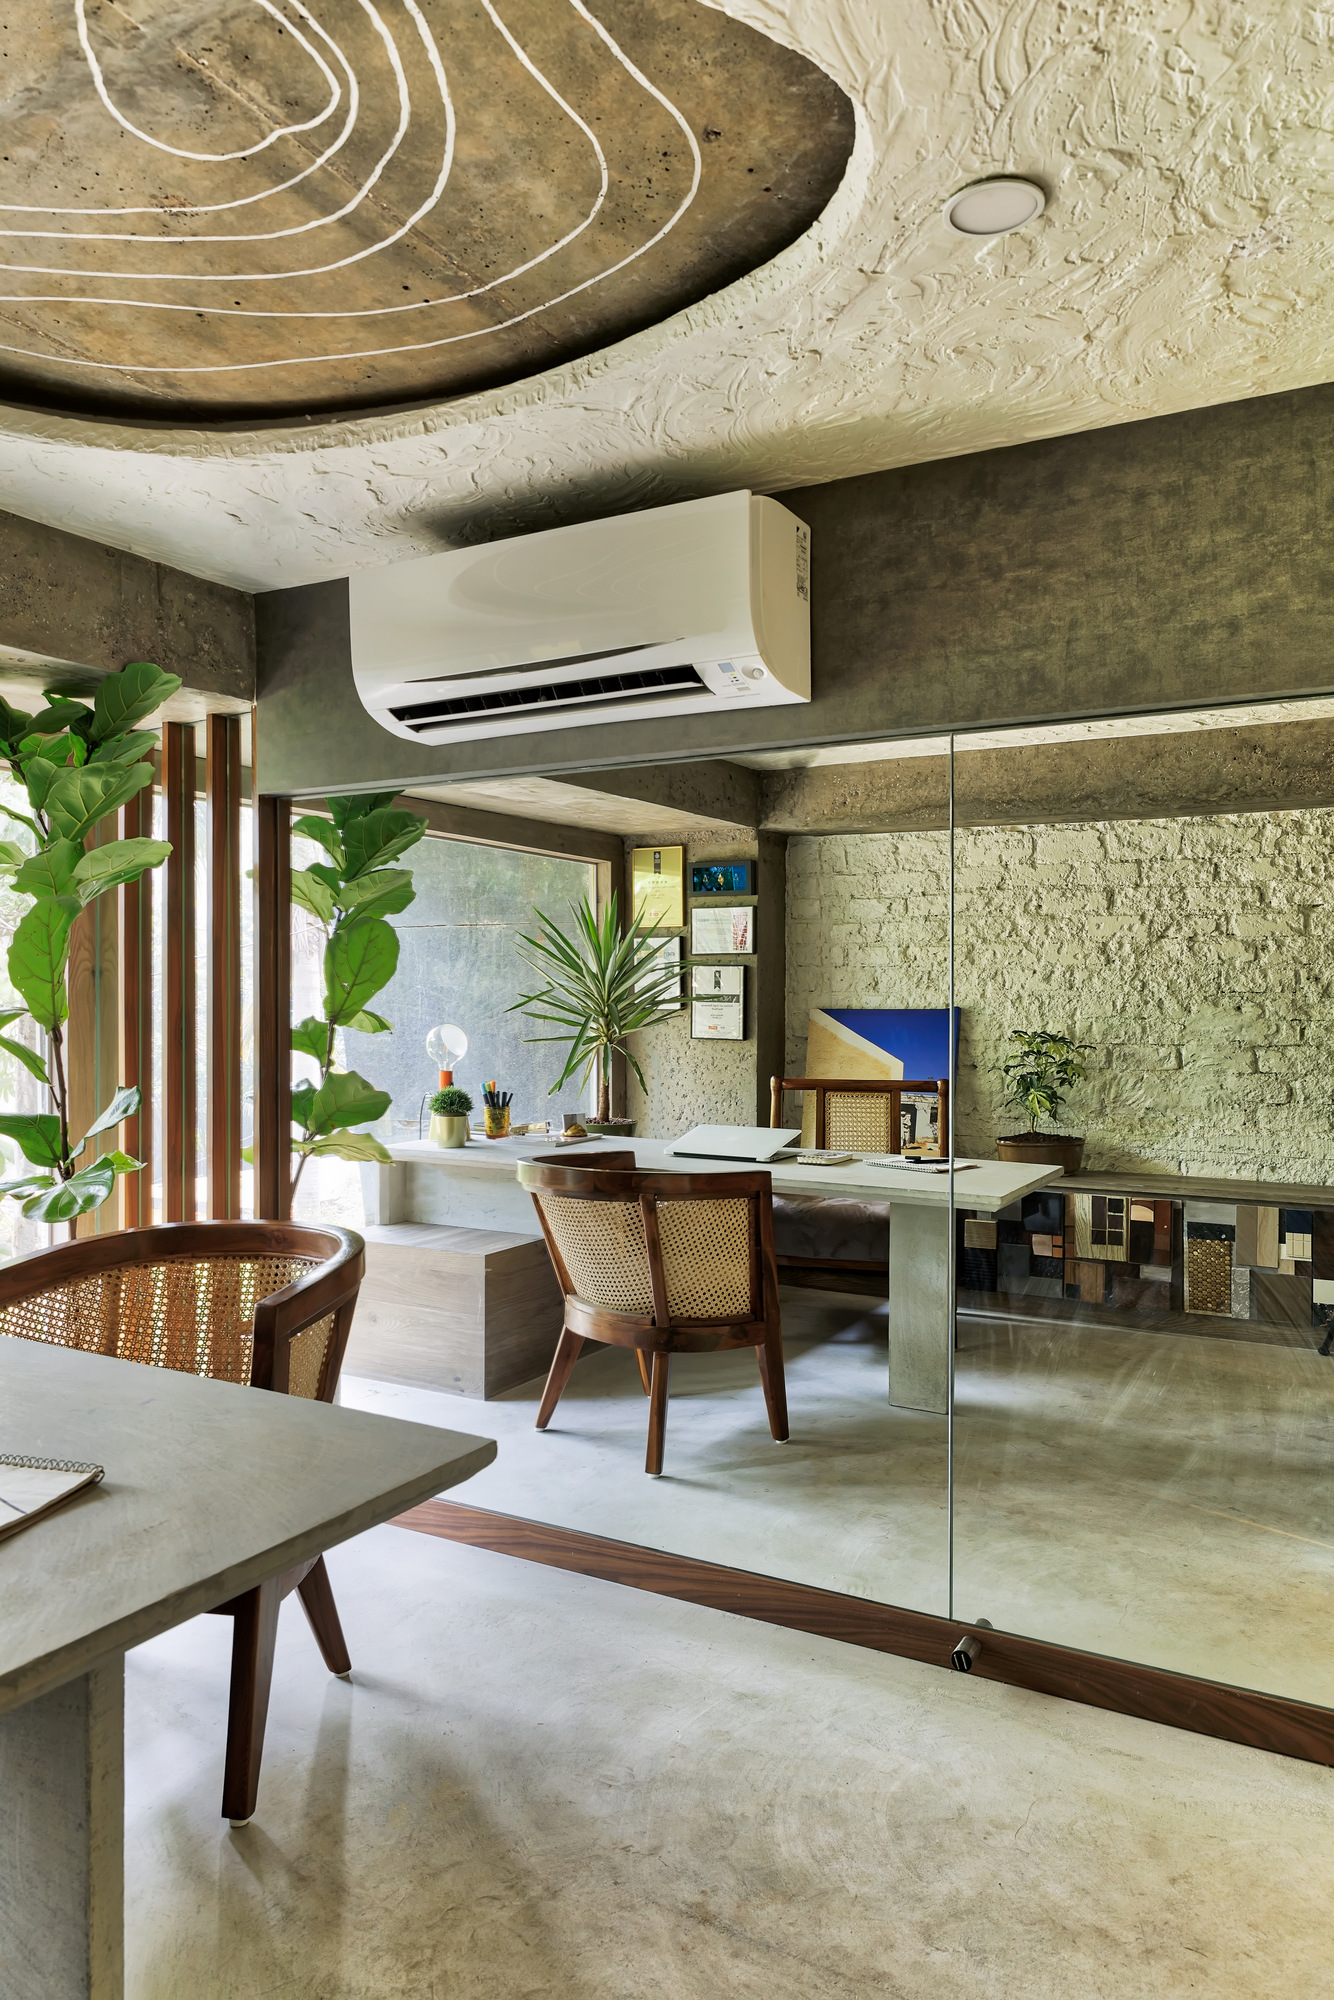 ZERO9办公室——孟买|ART-Arrakis | 建筑室内设计的创新与灵感